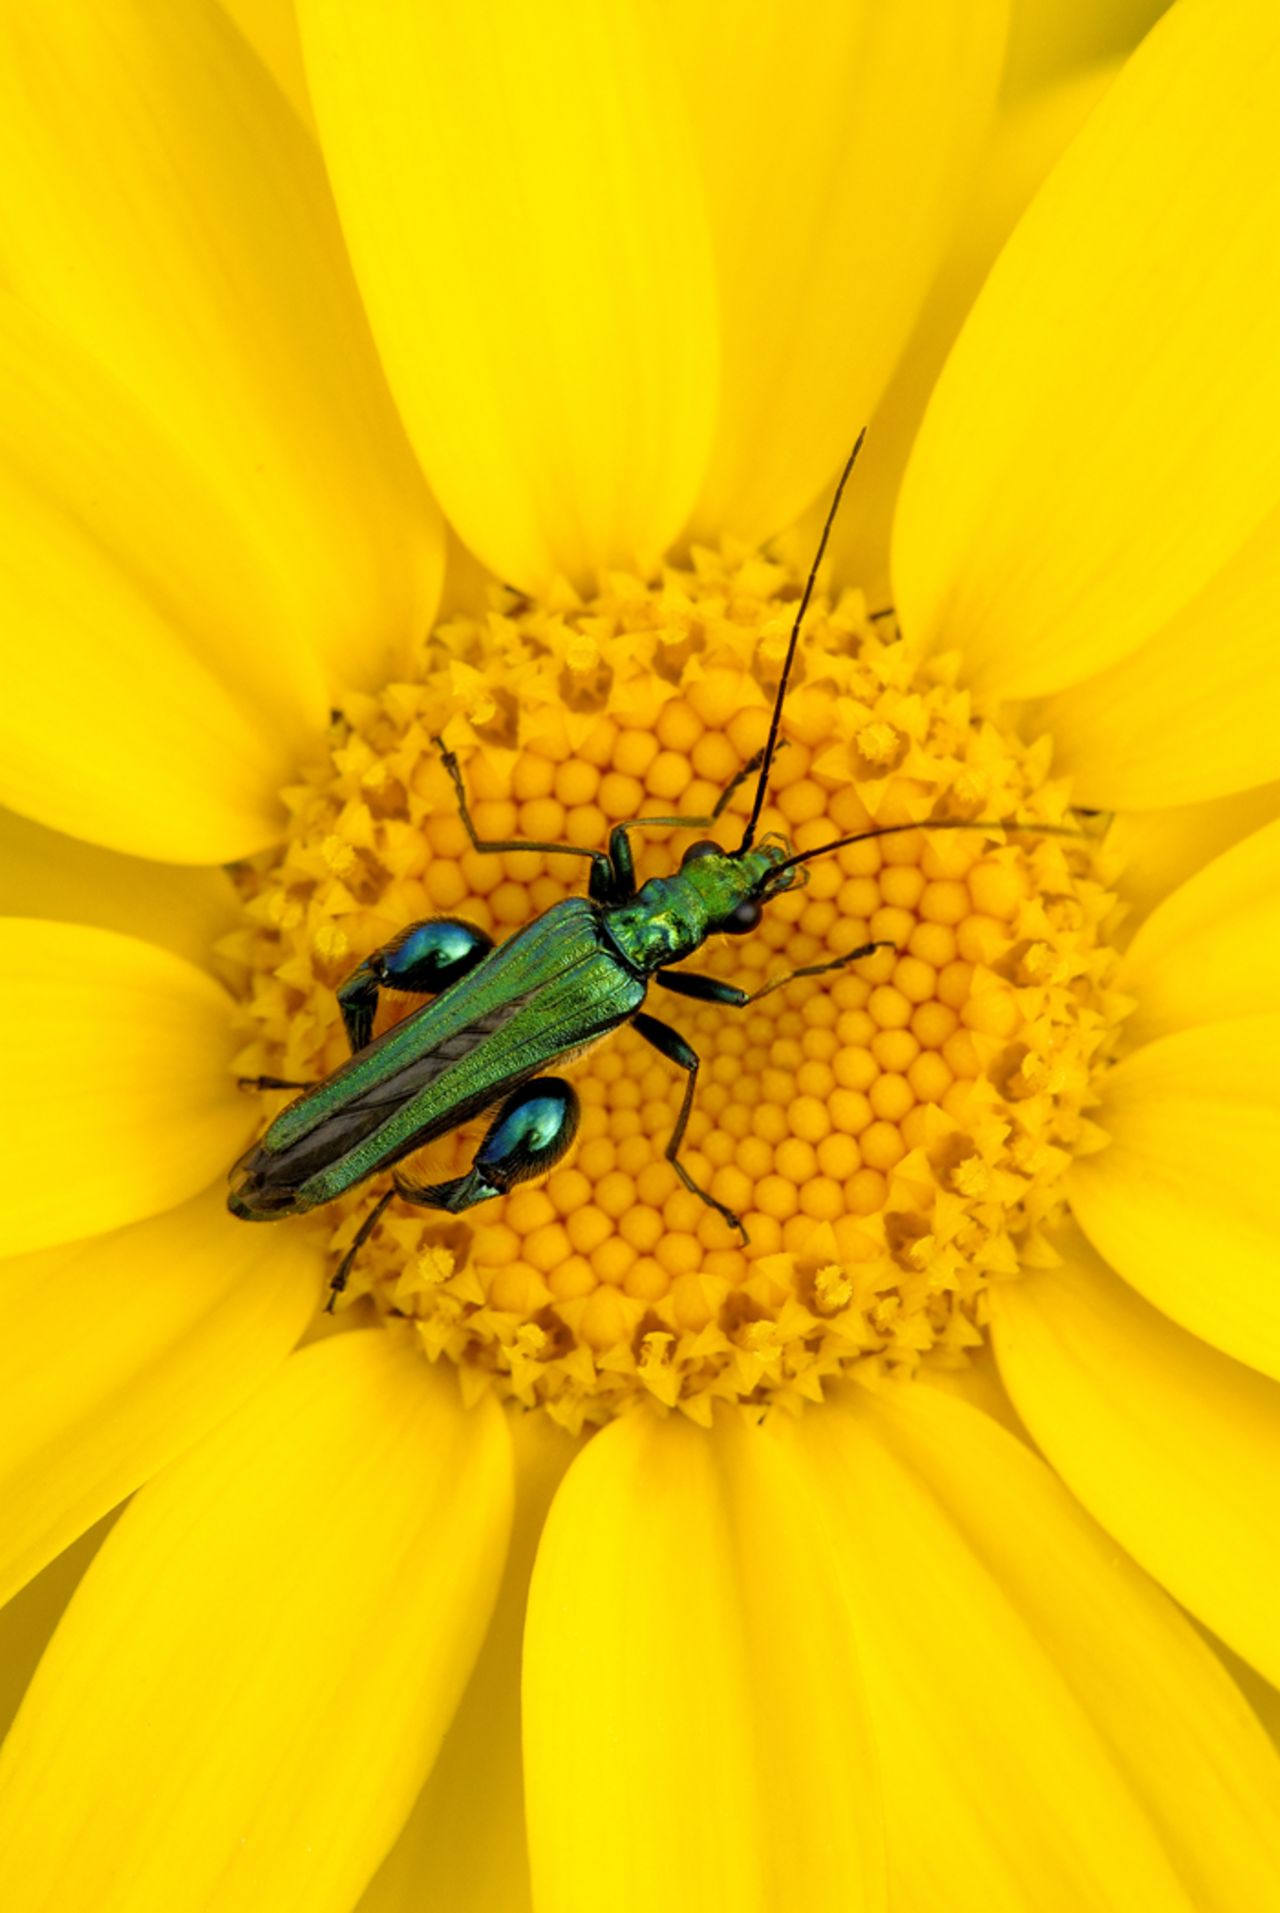 BRITISH SEASONS: "Summer Insects" by Ross Hoddinott